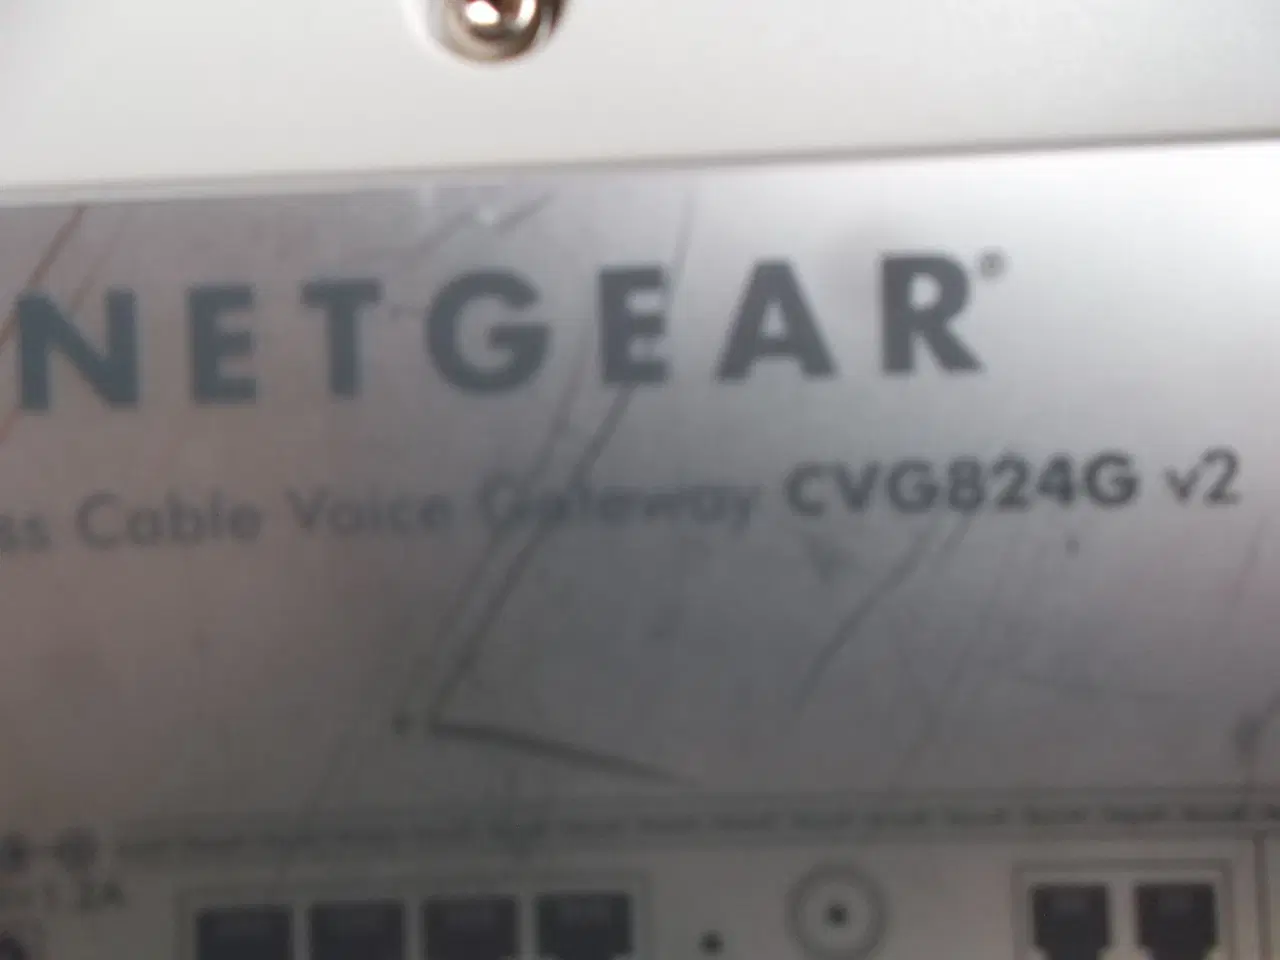 Billede 4 - Netgear youSee CVG824G v2 kabel-TV internet modem 